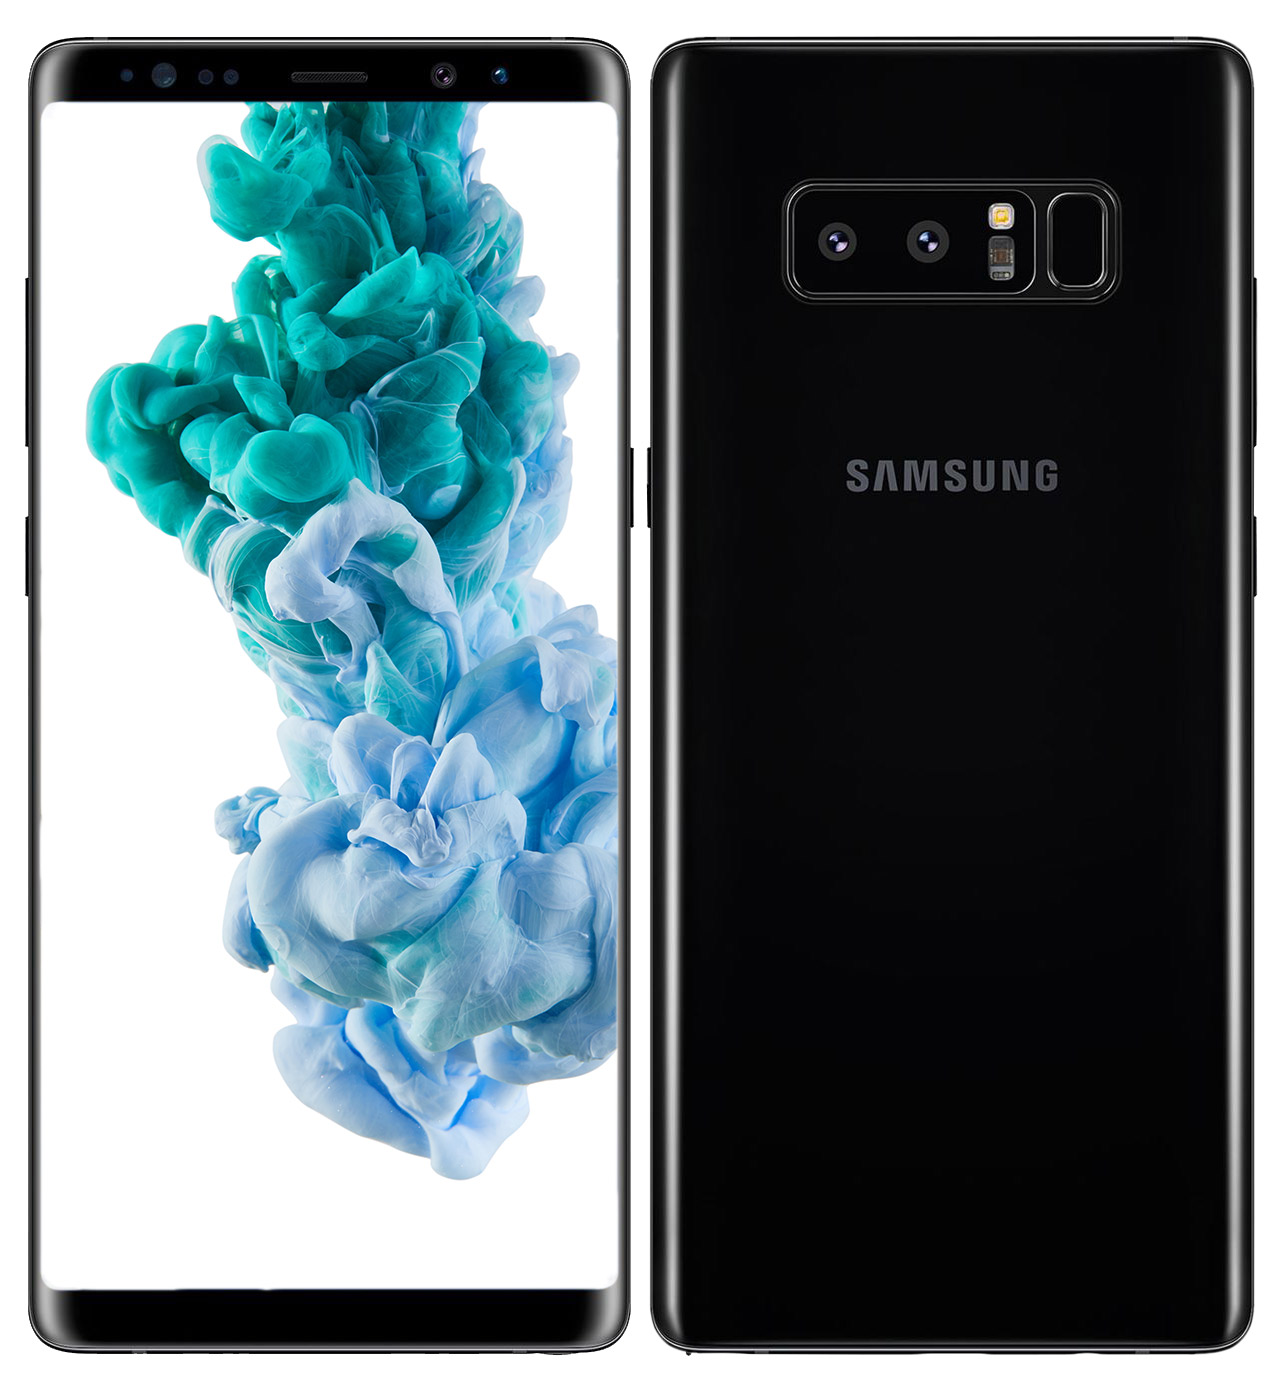 Wie neu: Samsung Galaxy Note 8